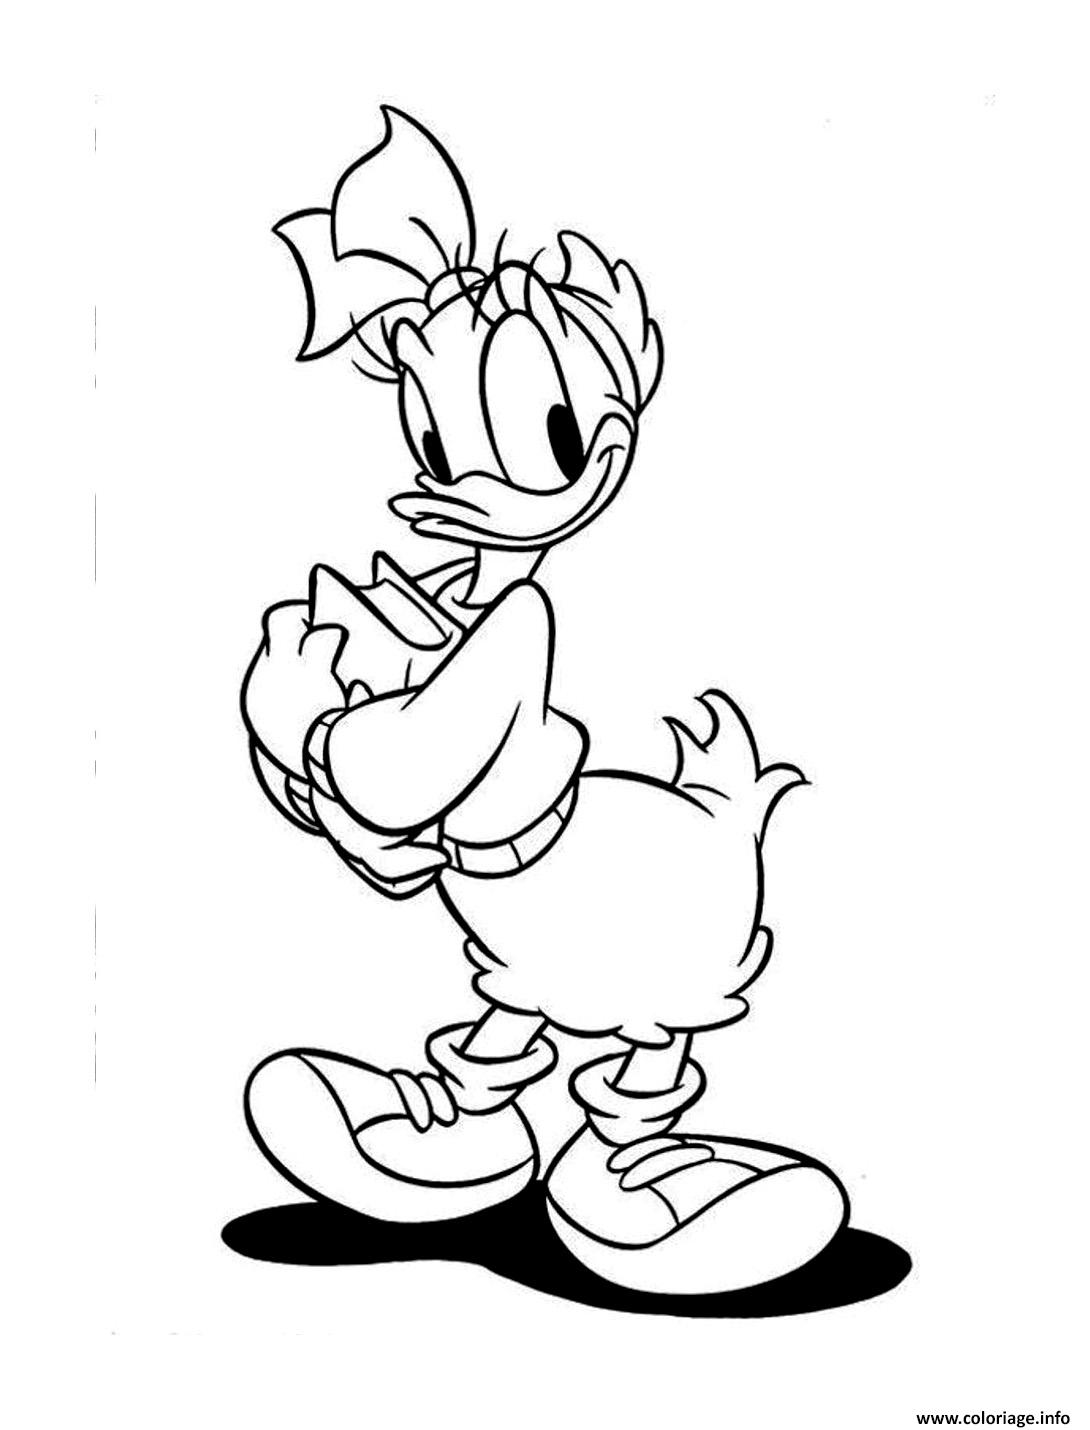 Dessin donald duck amoureux de daisy duck Coloriage Gratuit à Imprimer